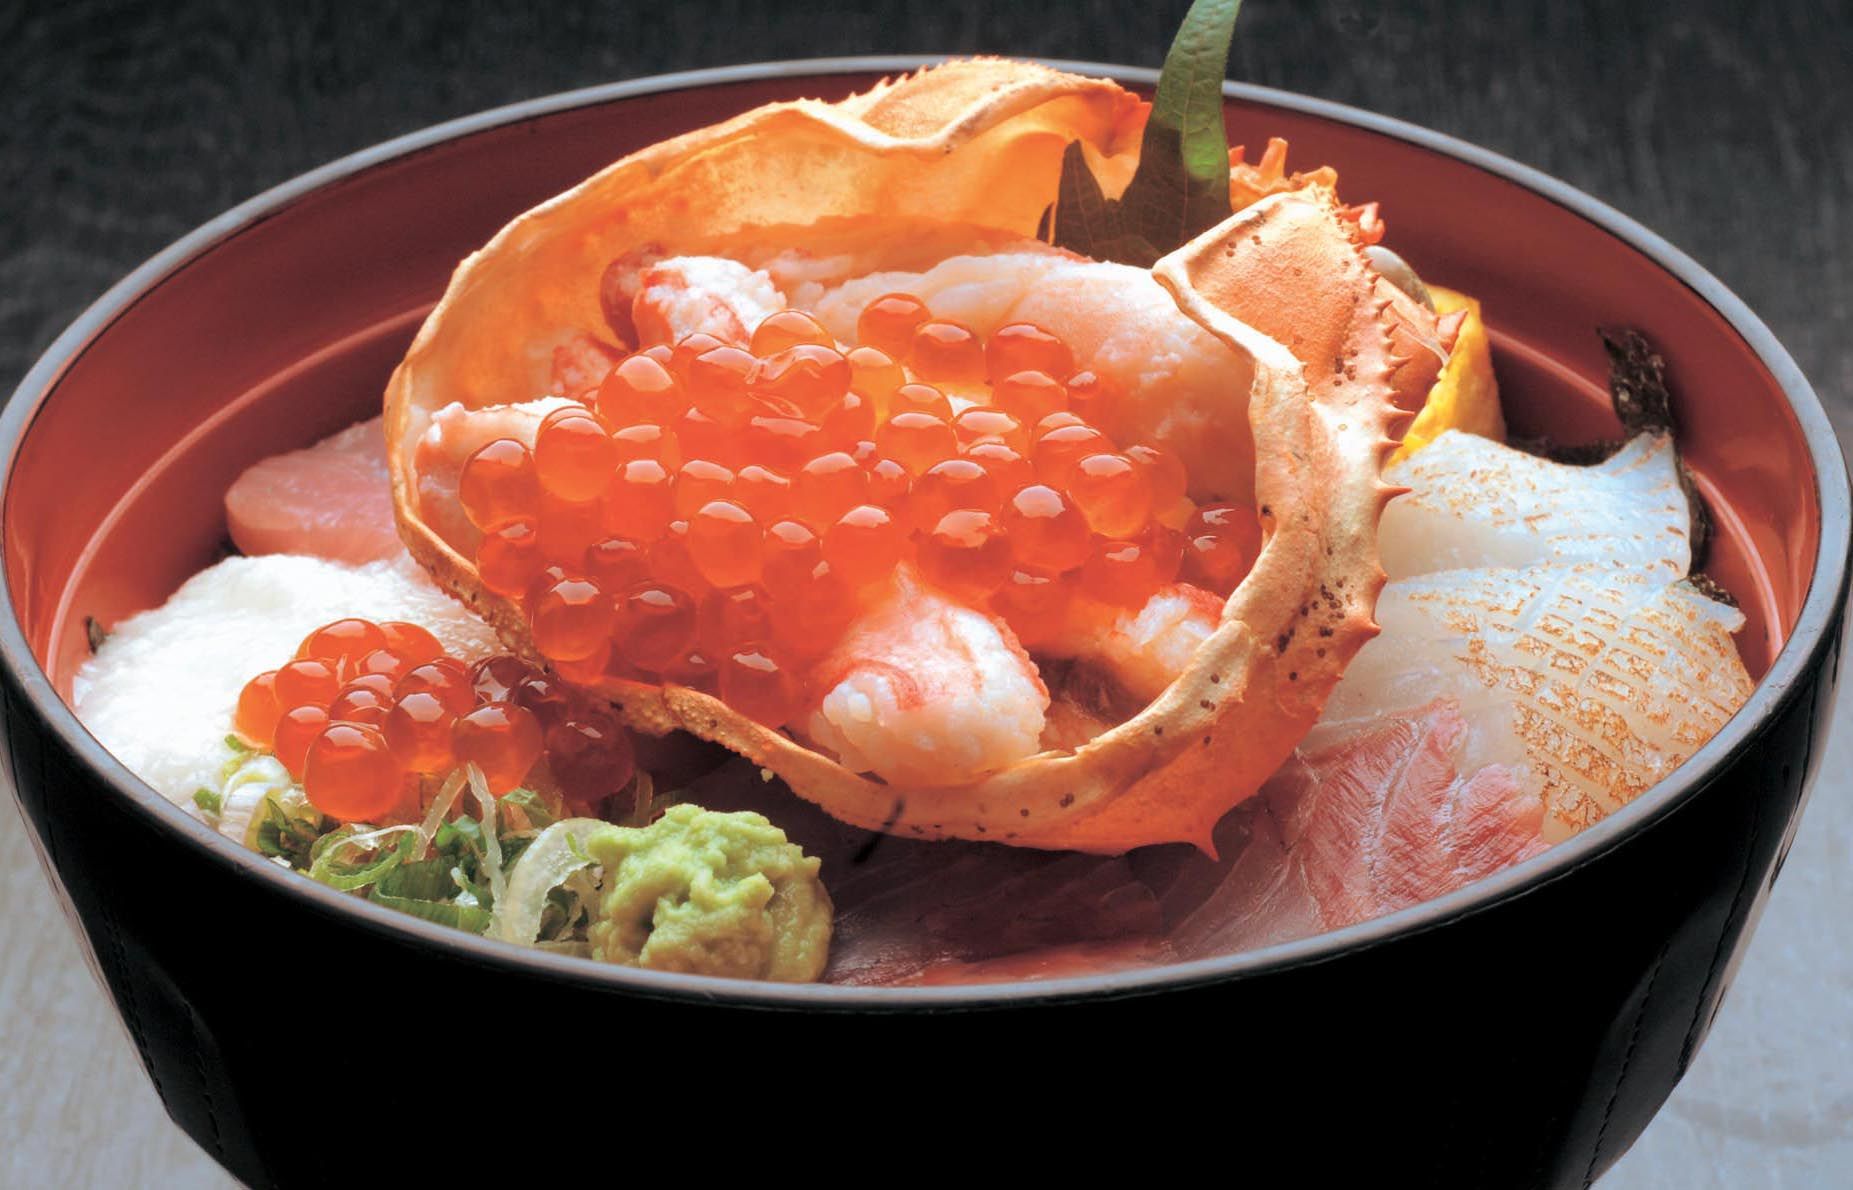 著名的市场餐厅 Karoko 以合理的价格供应新鲜的海鲜。 2,180日元的大份特制海鲜盖饭很受欢迎。